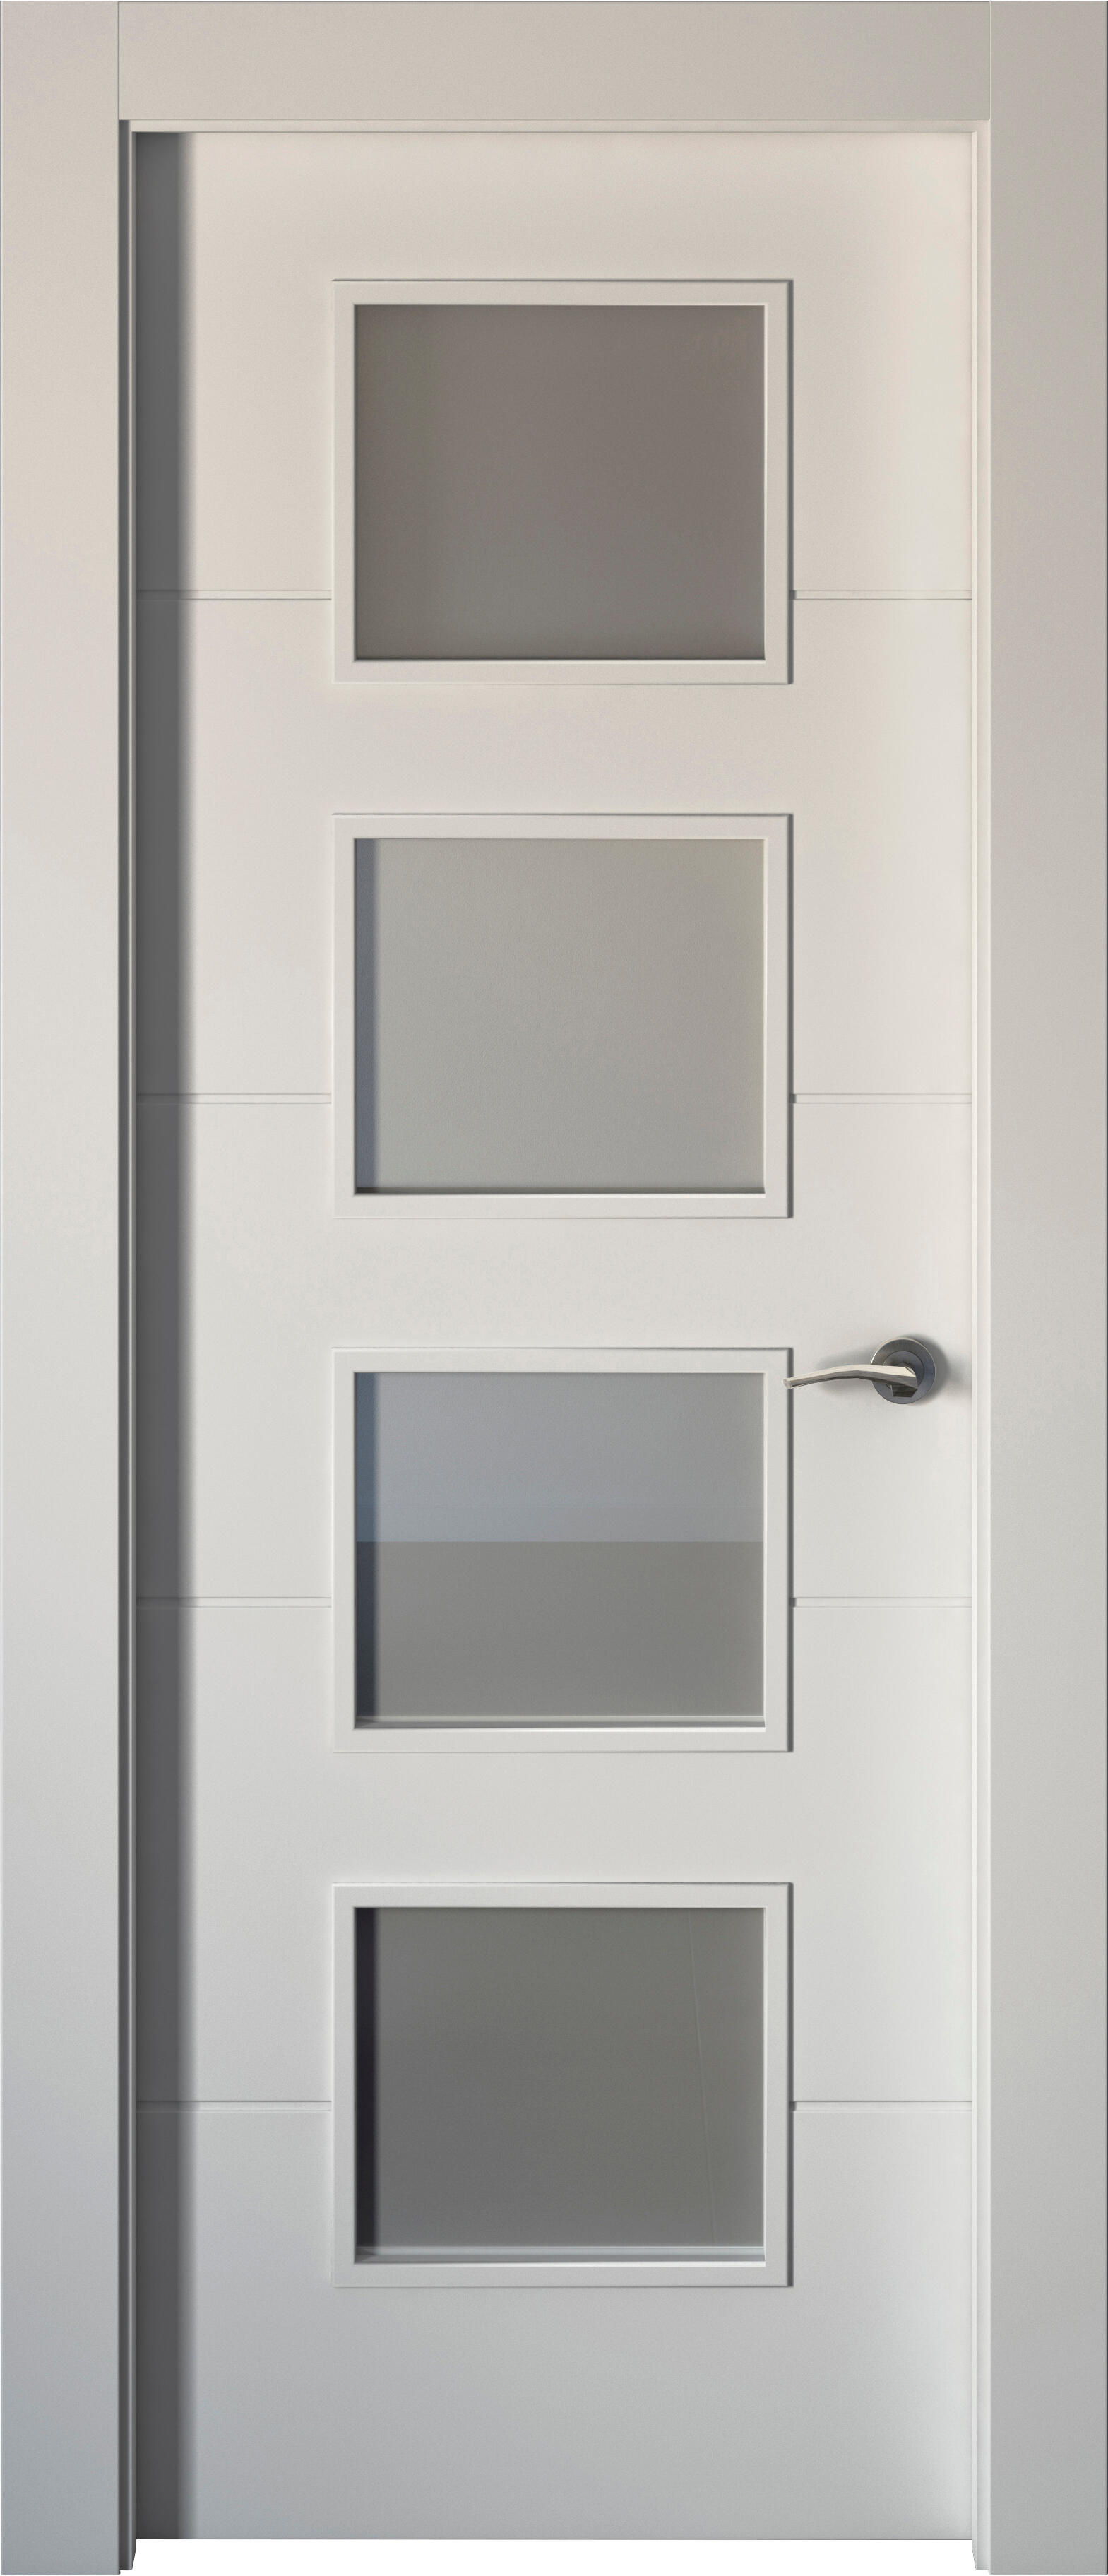 Puerta abatible holanda blanca aero blanco izquierda con cristal 110x30 y 82.5cm